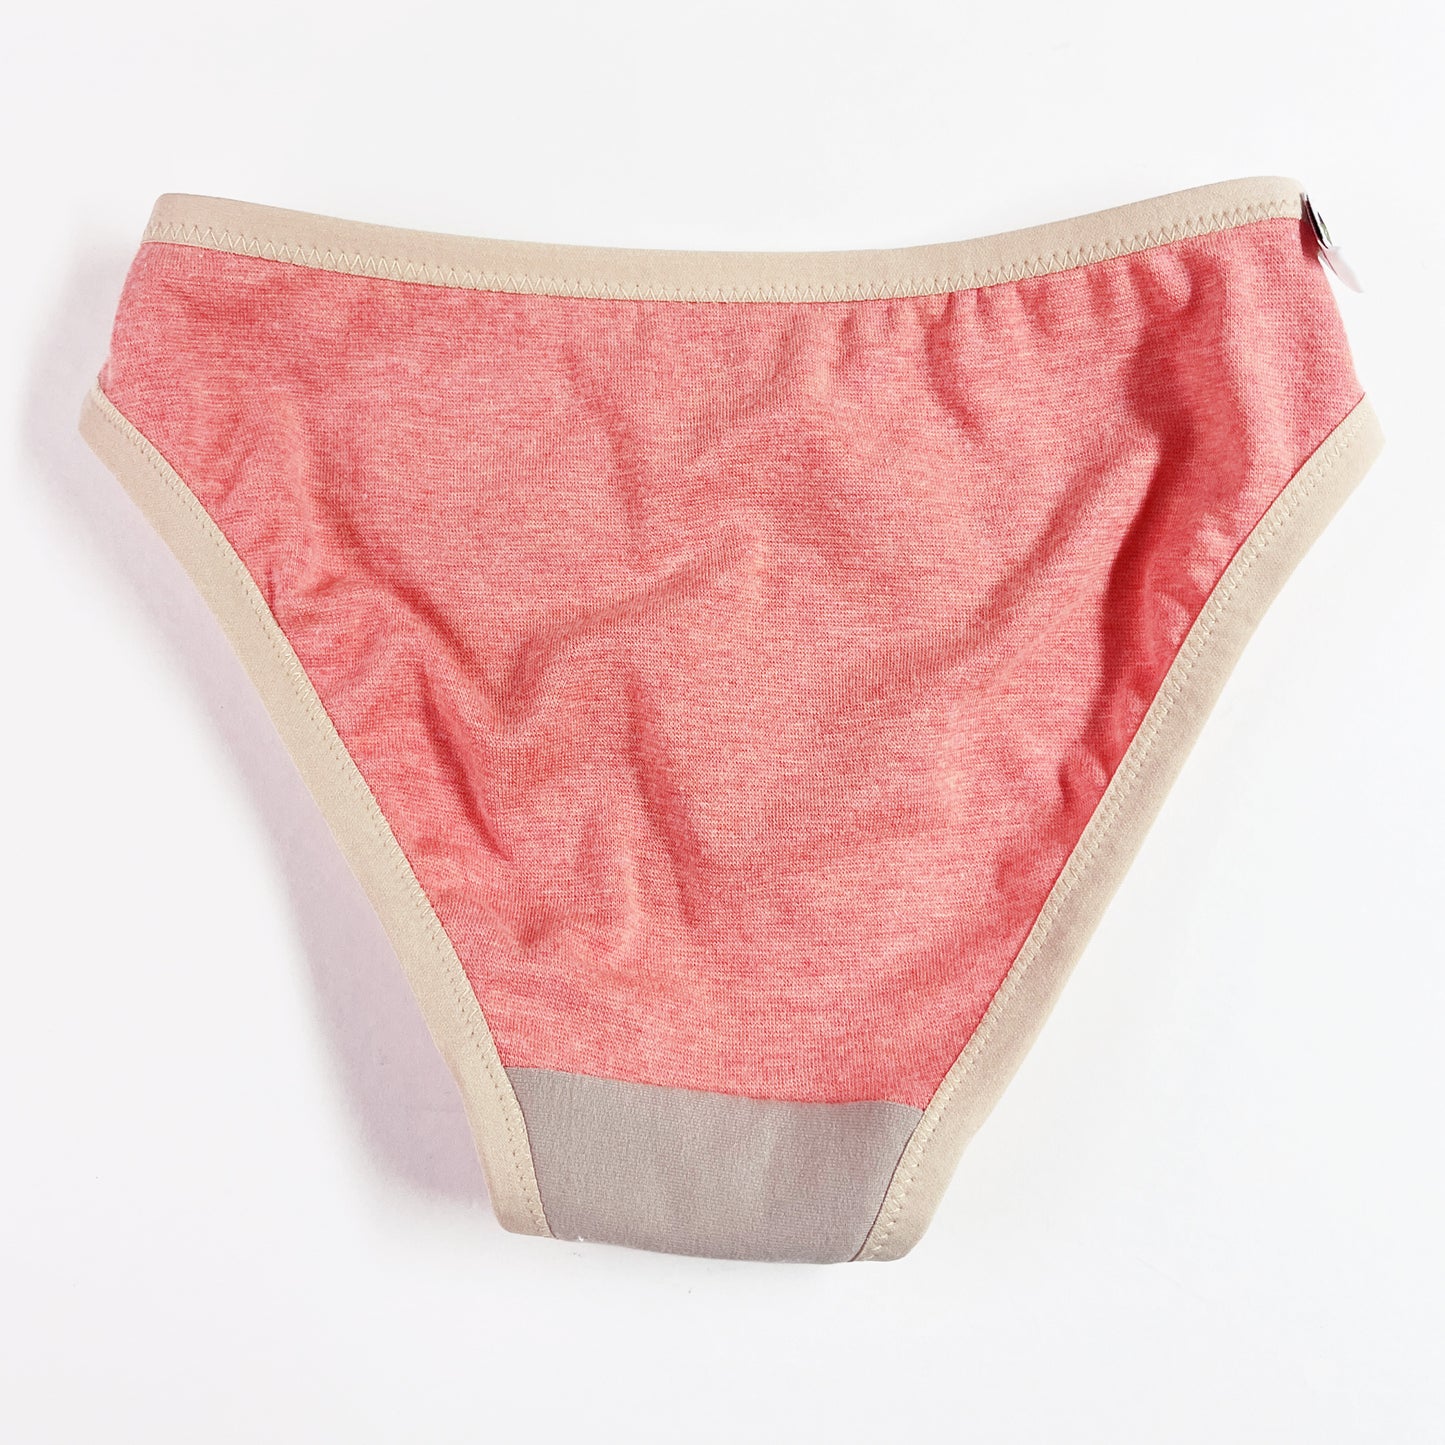 organic cotton bikini panties | Made in Canada  organic underwear for women 